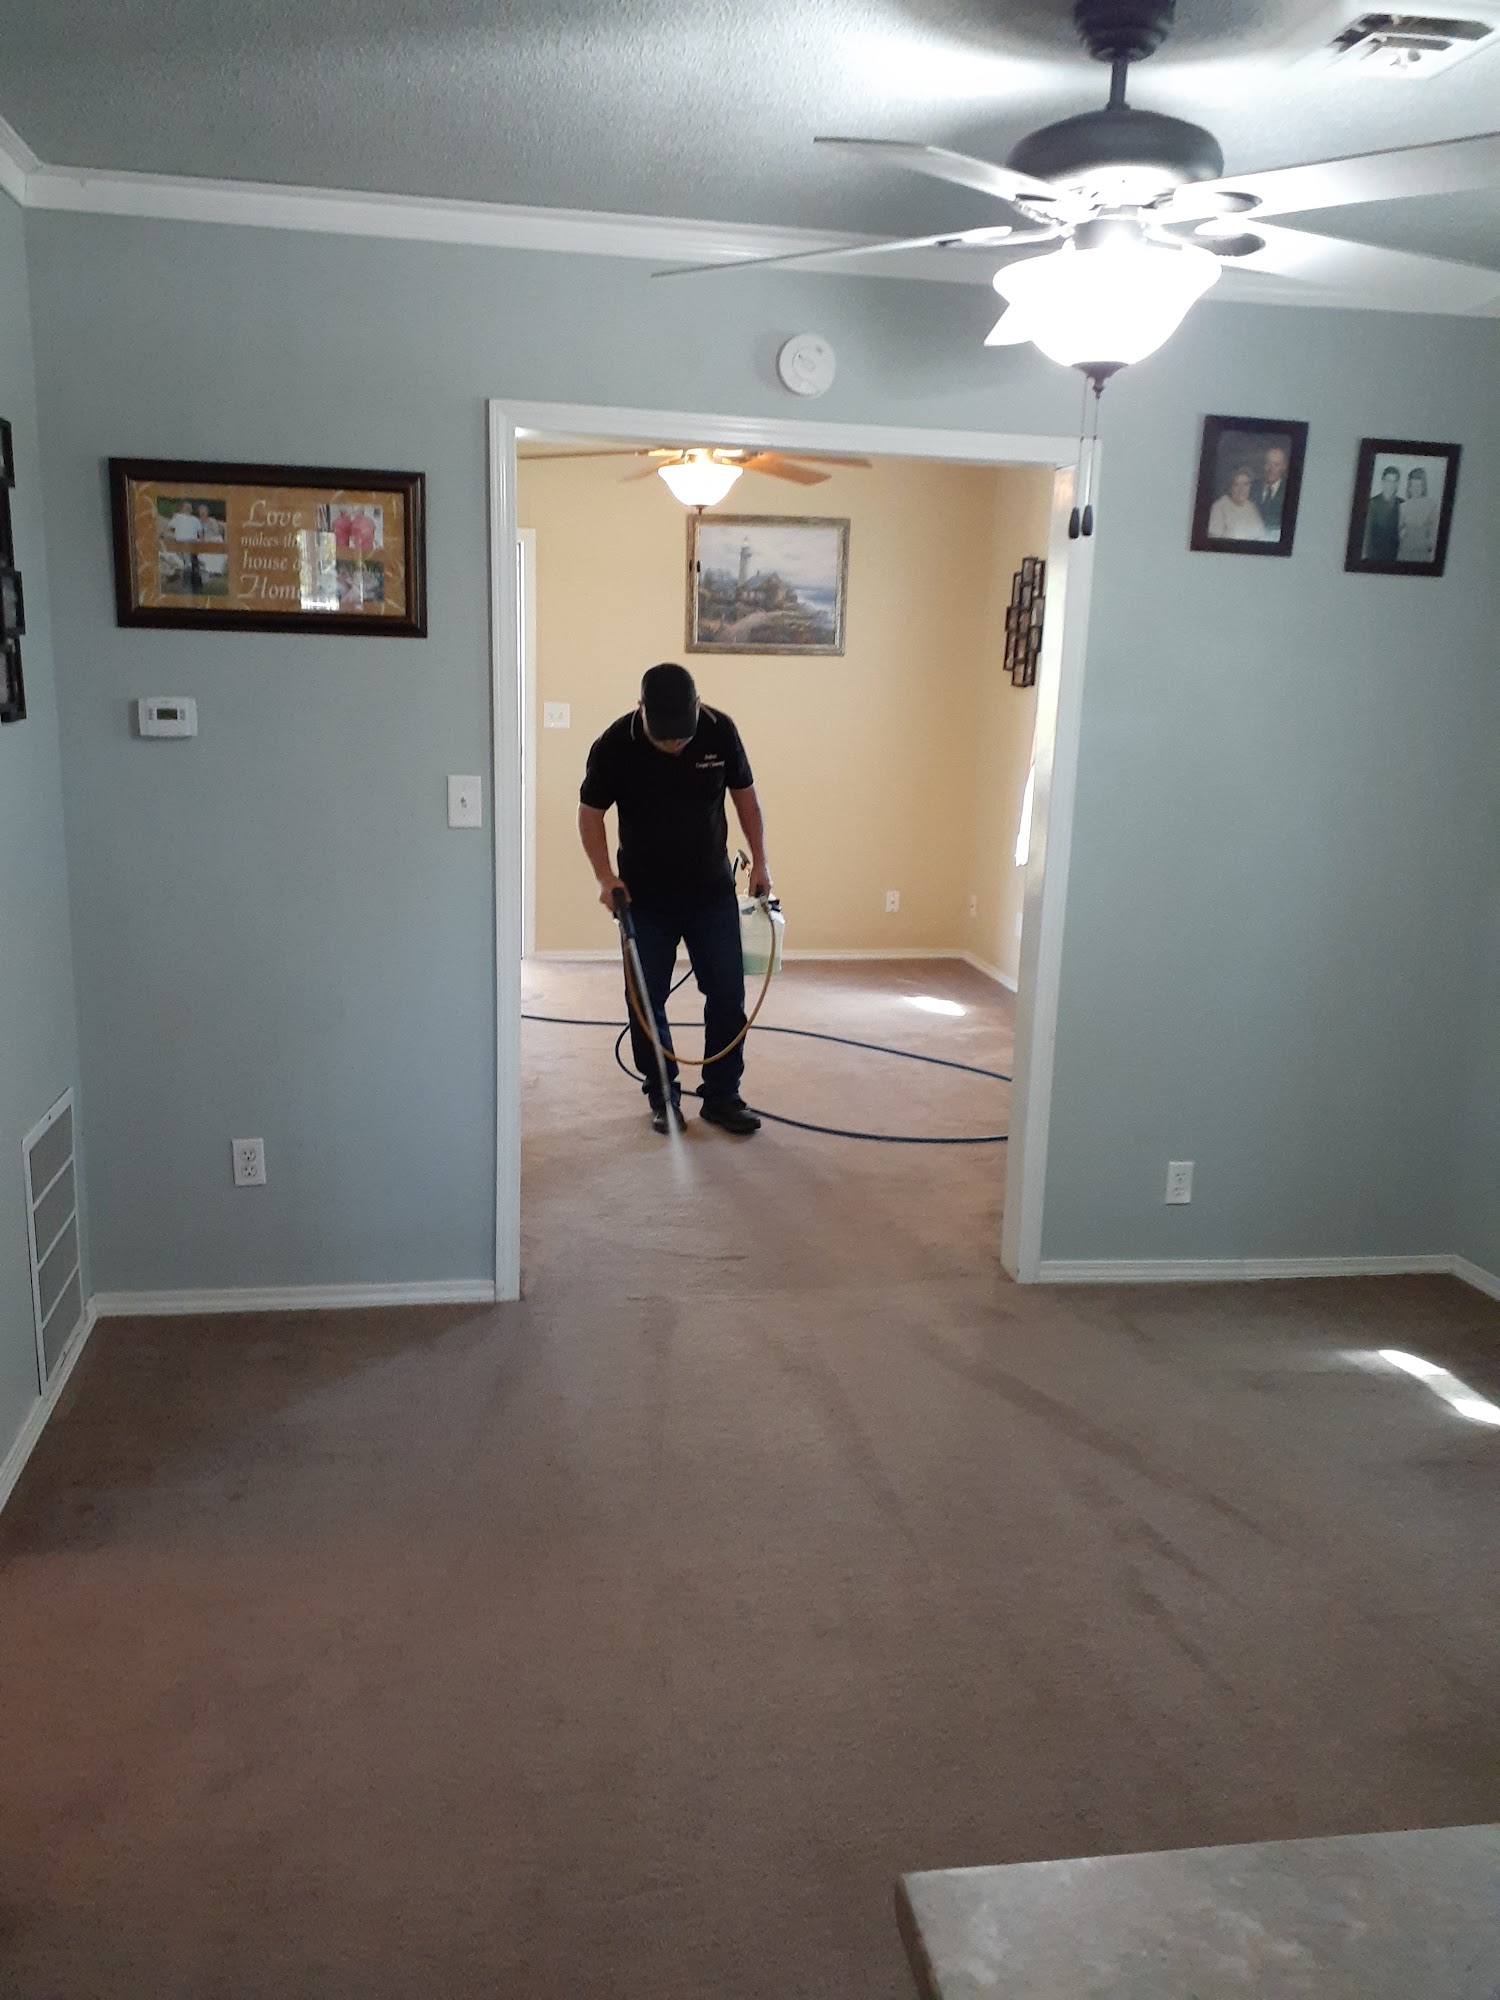 Bolton's Carpet Cleaning 1702 215th St, Fort Scott Kansas 66701